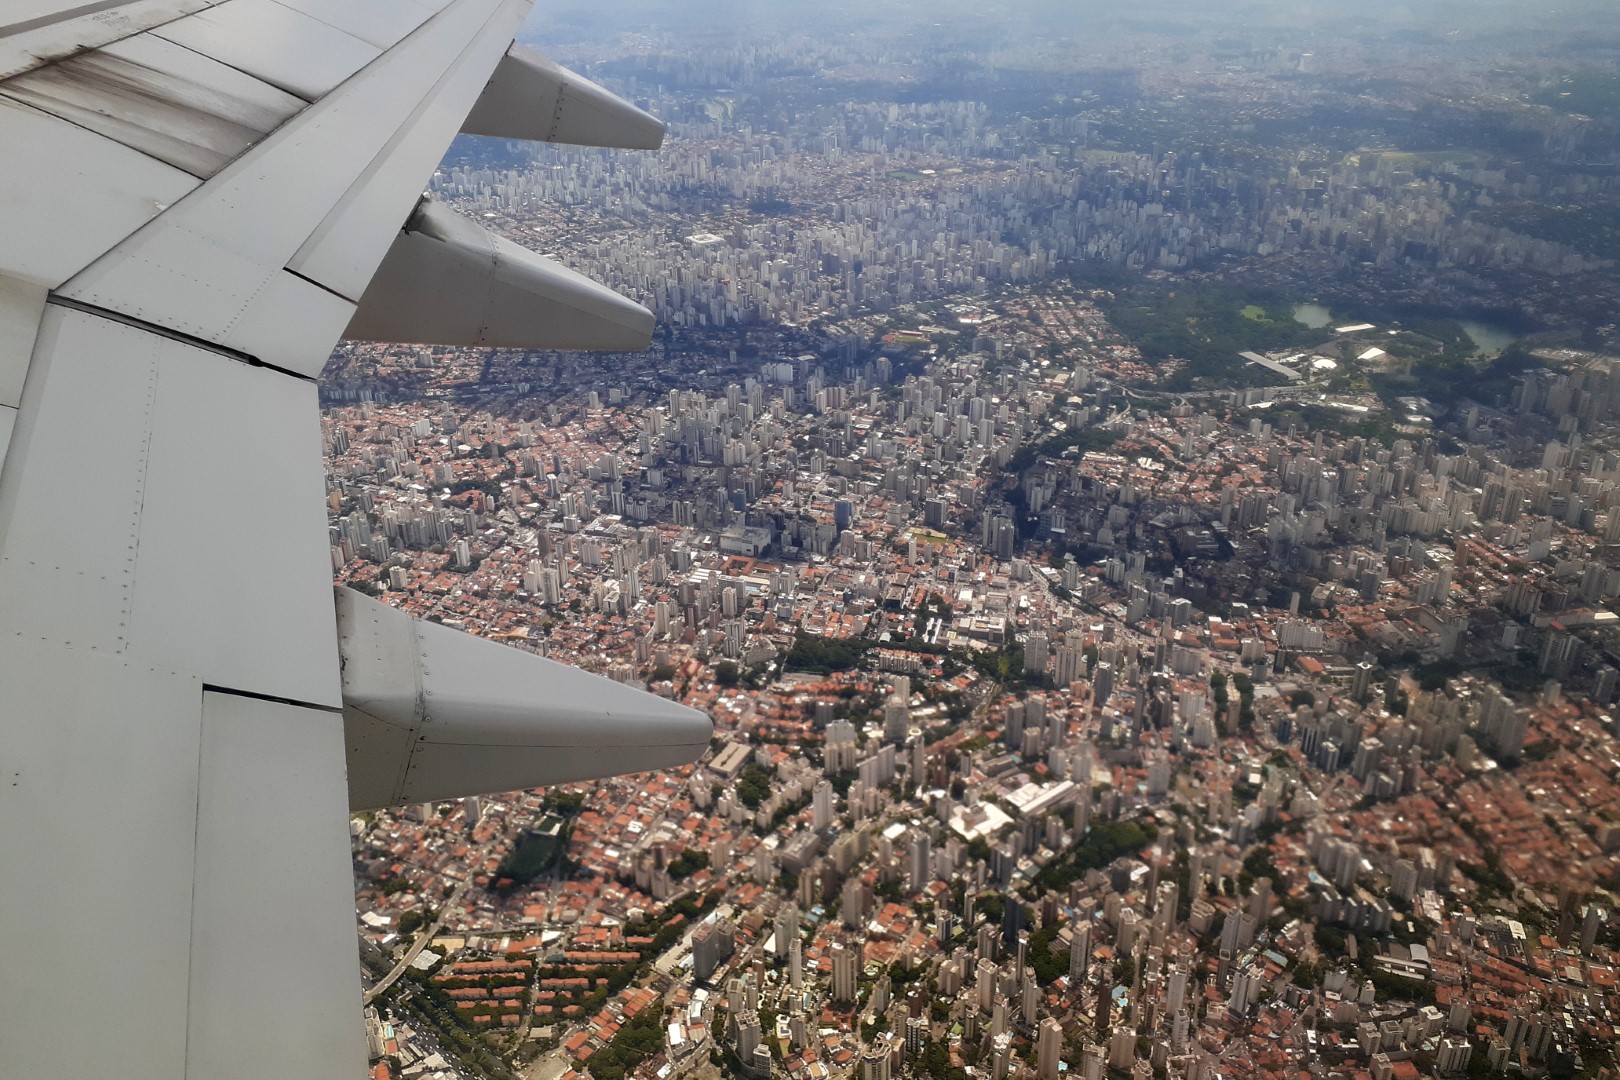 Takeoff in Aeroporto de São Paulo/Congonhas